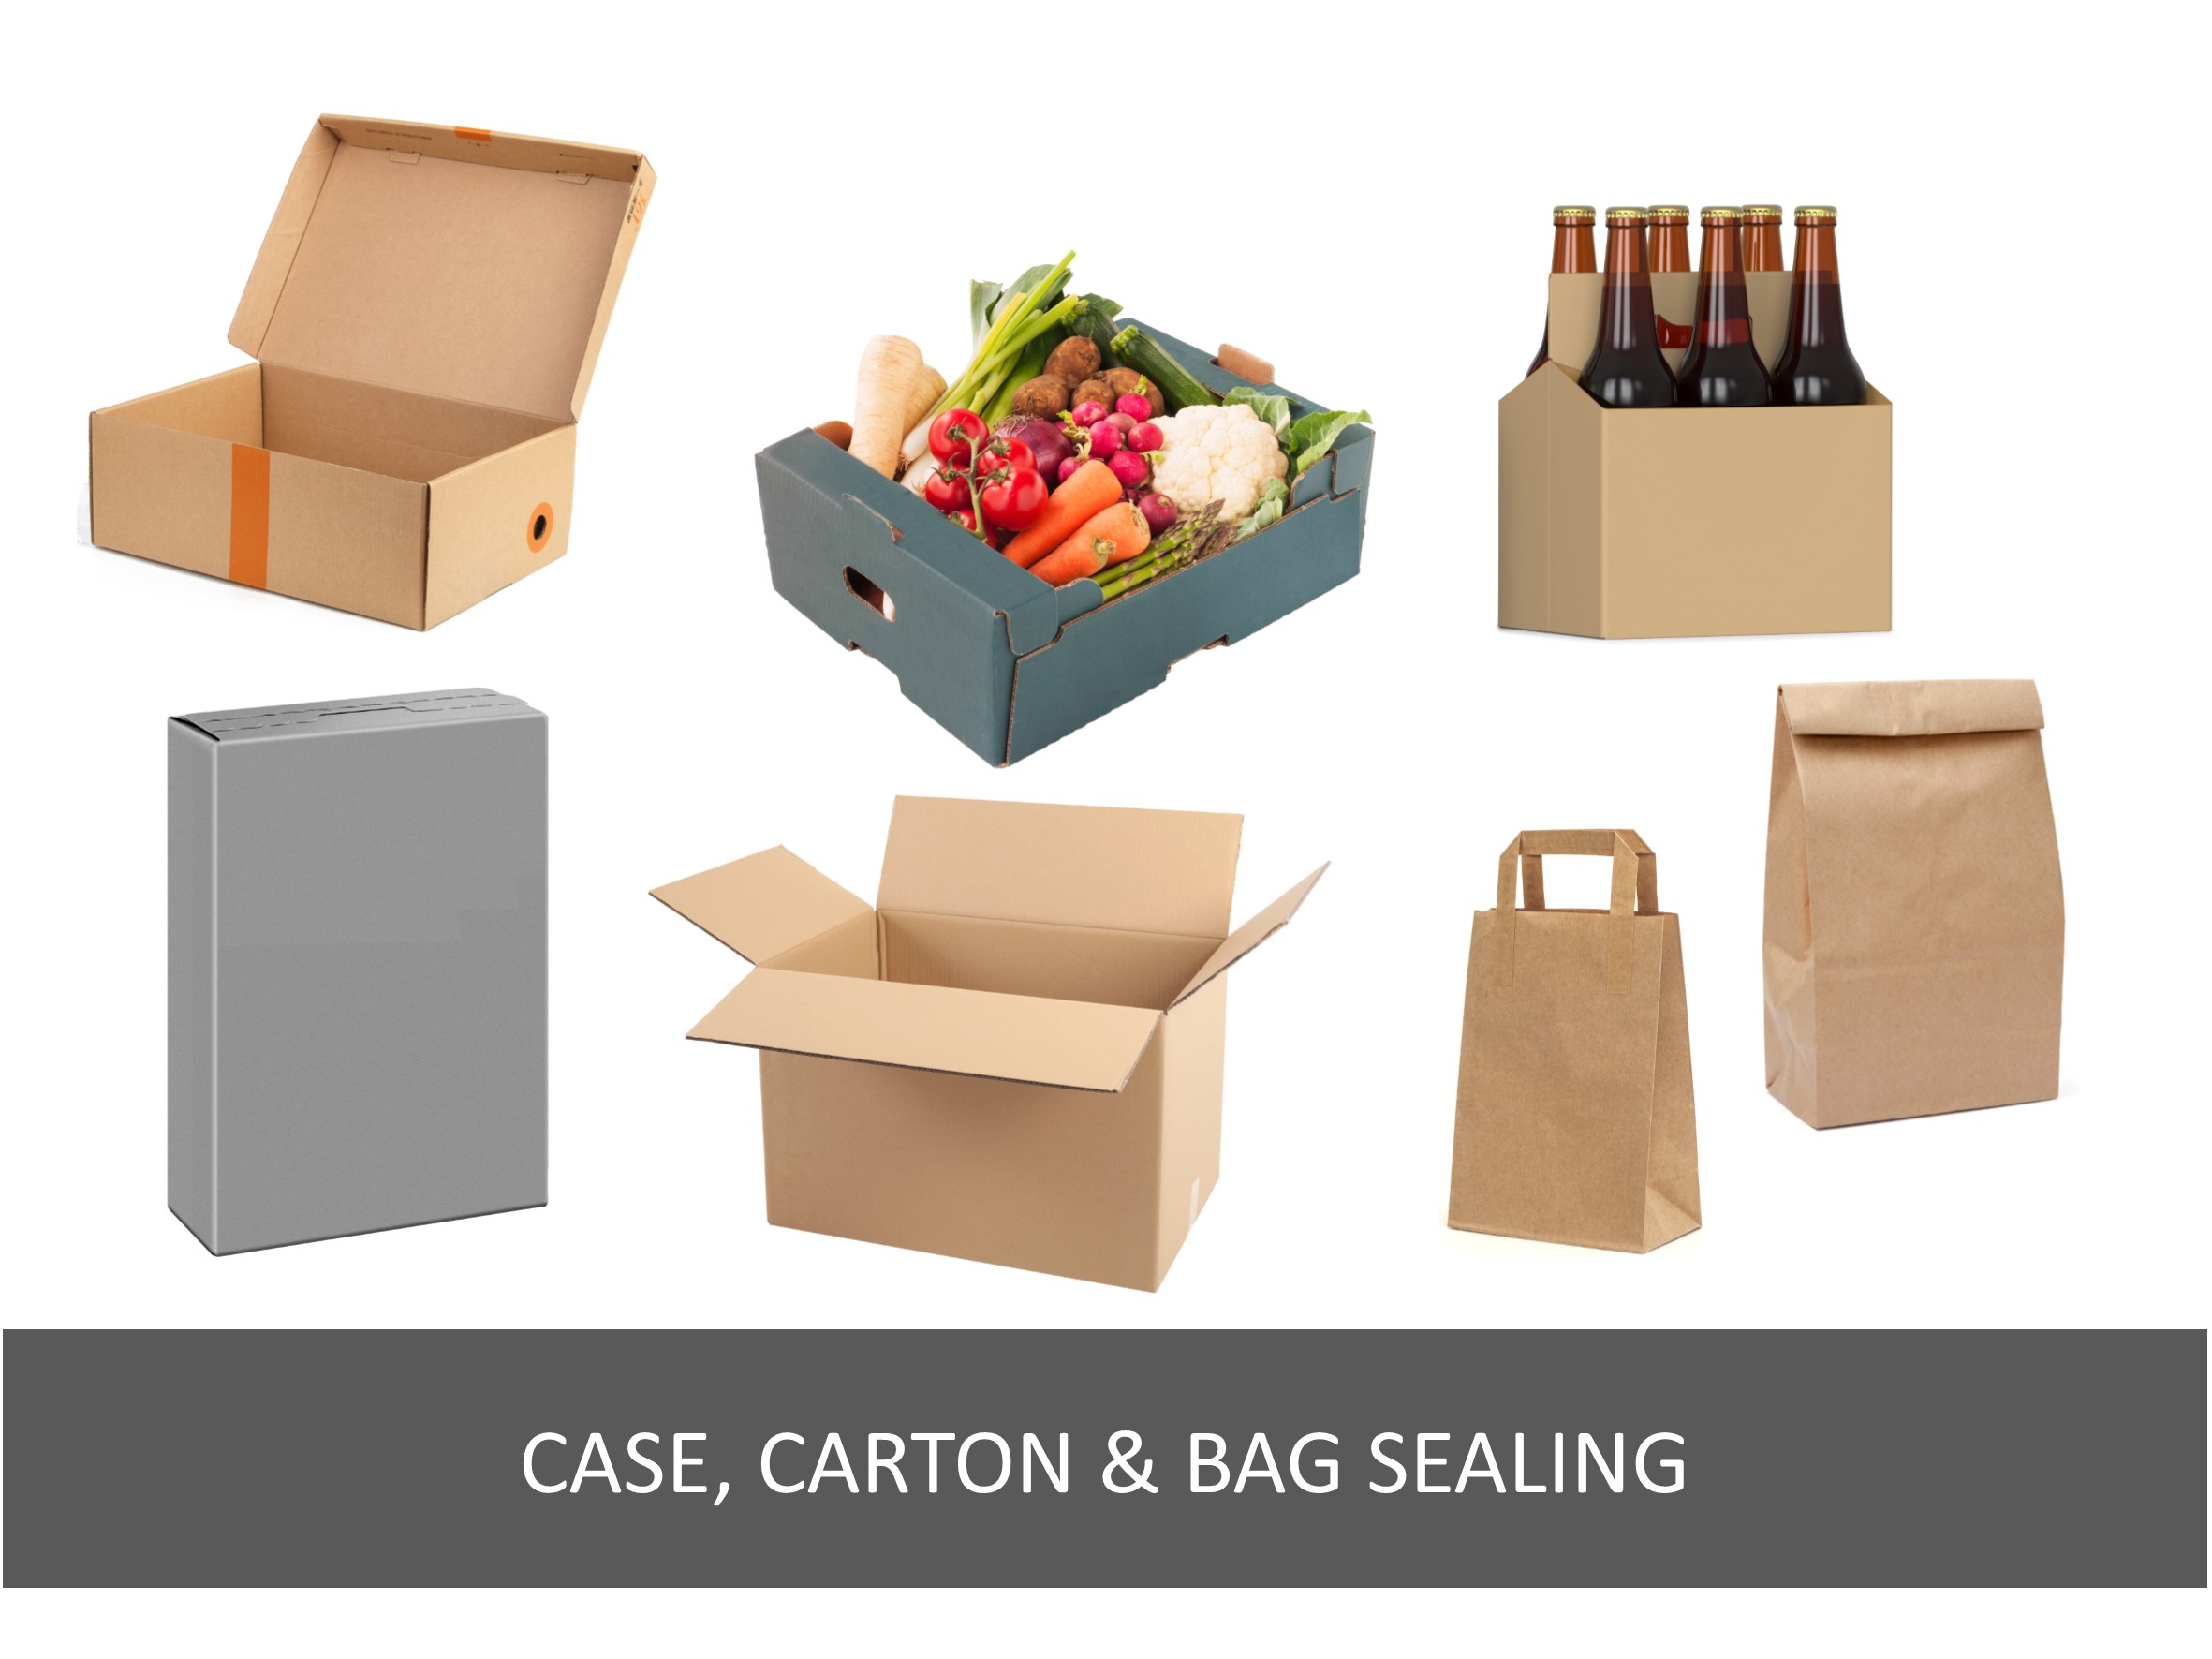 Case, carton & bag sealing